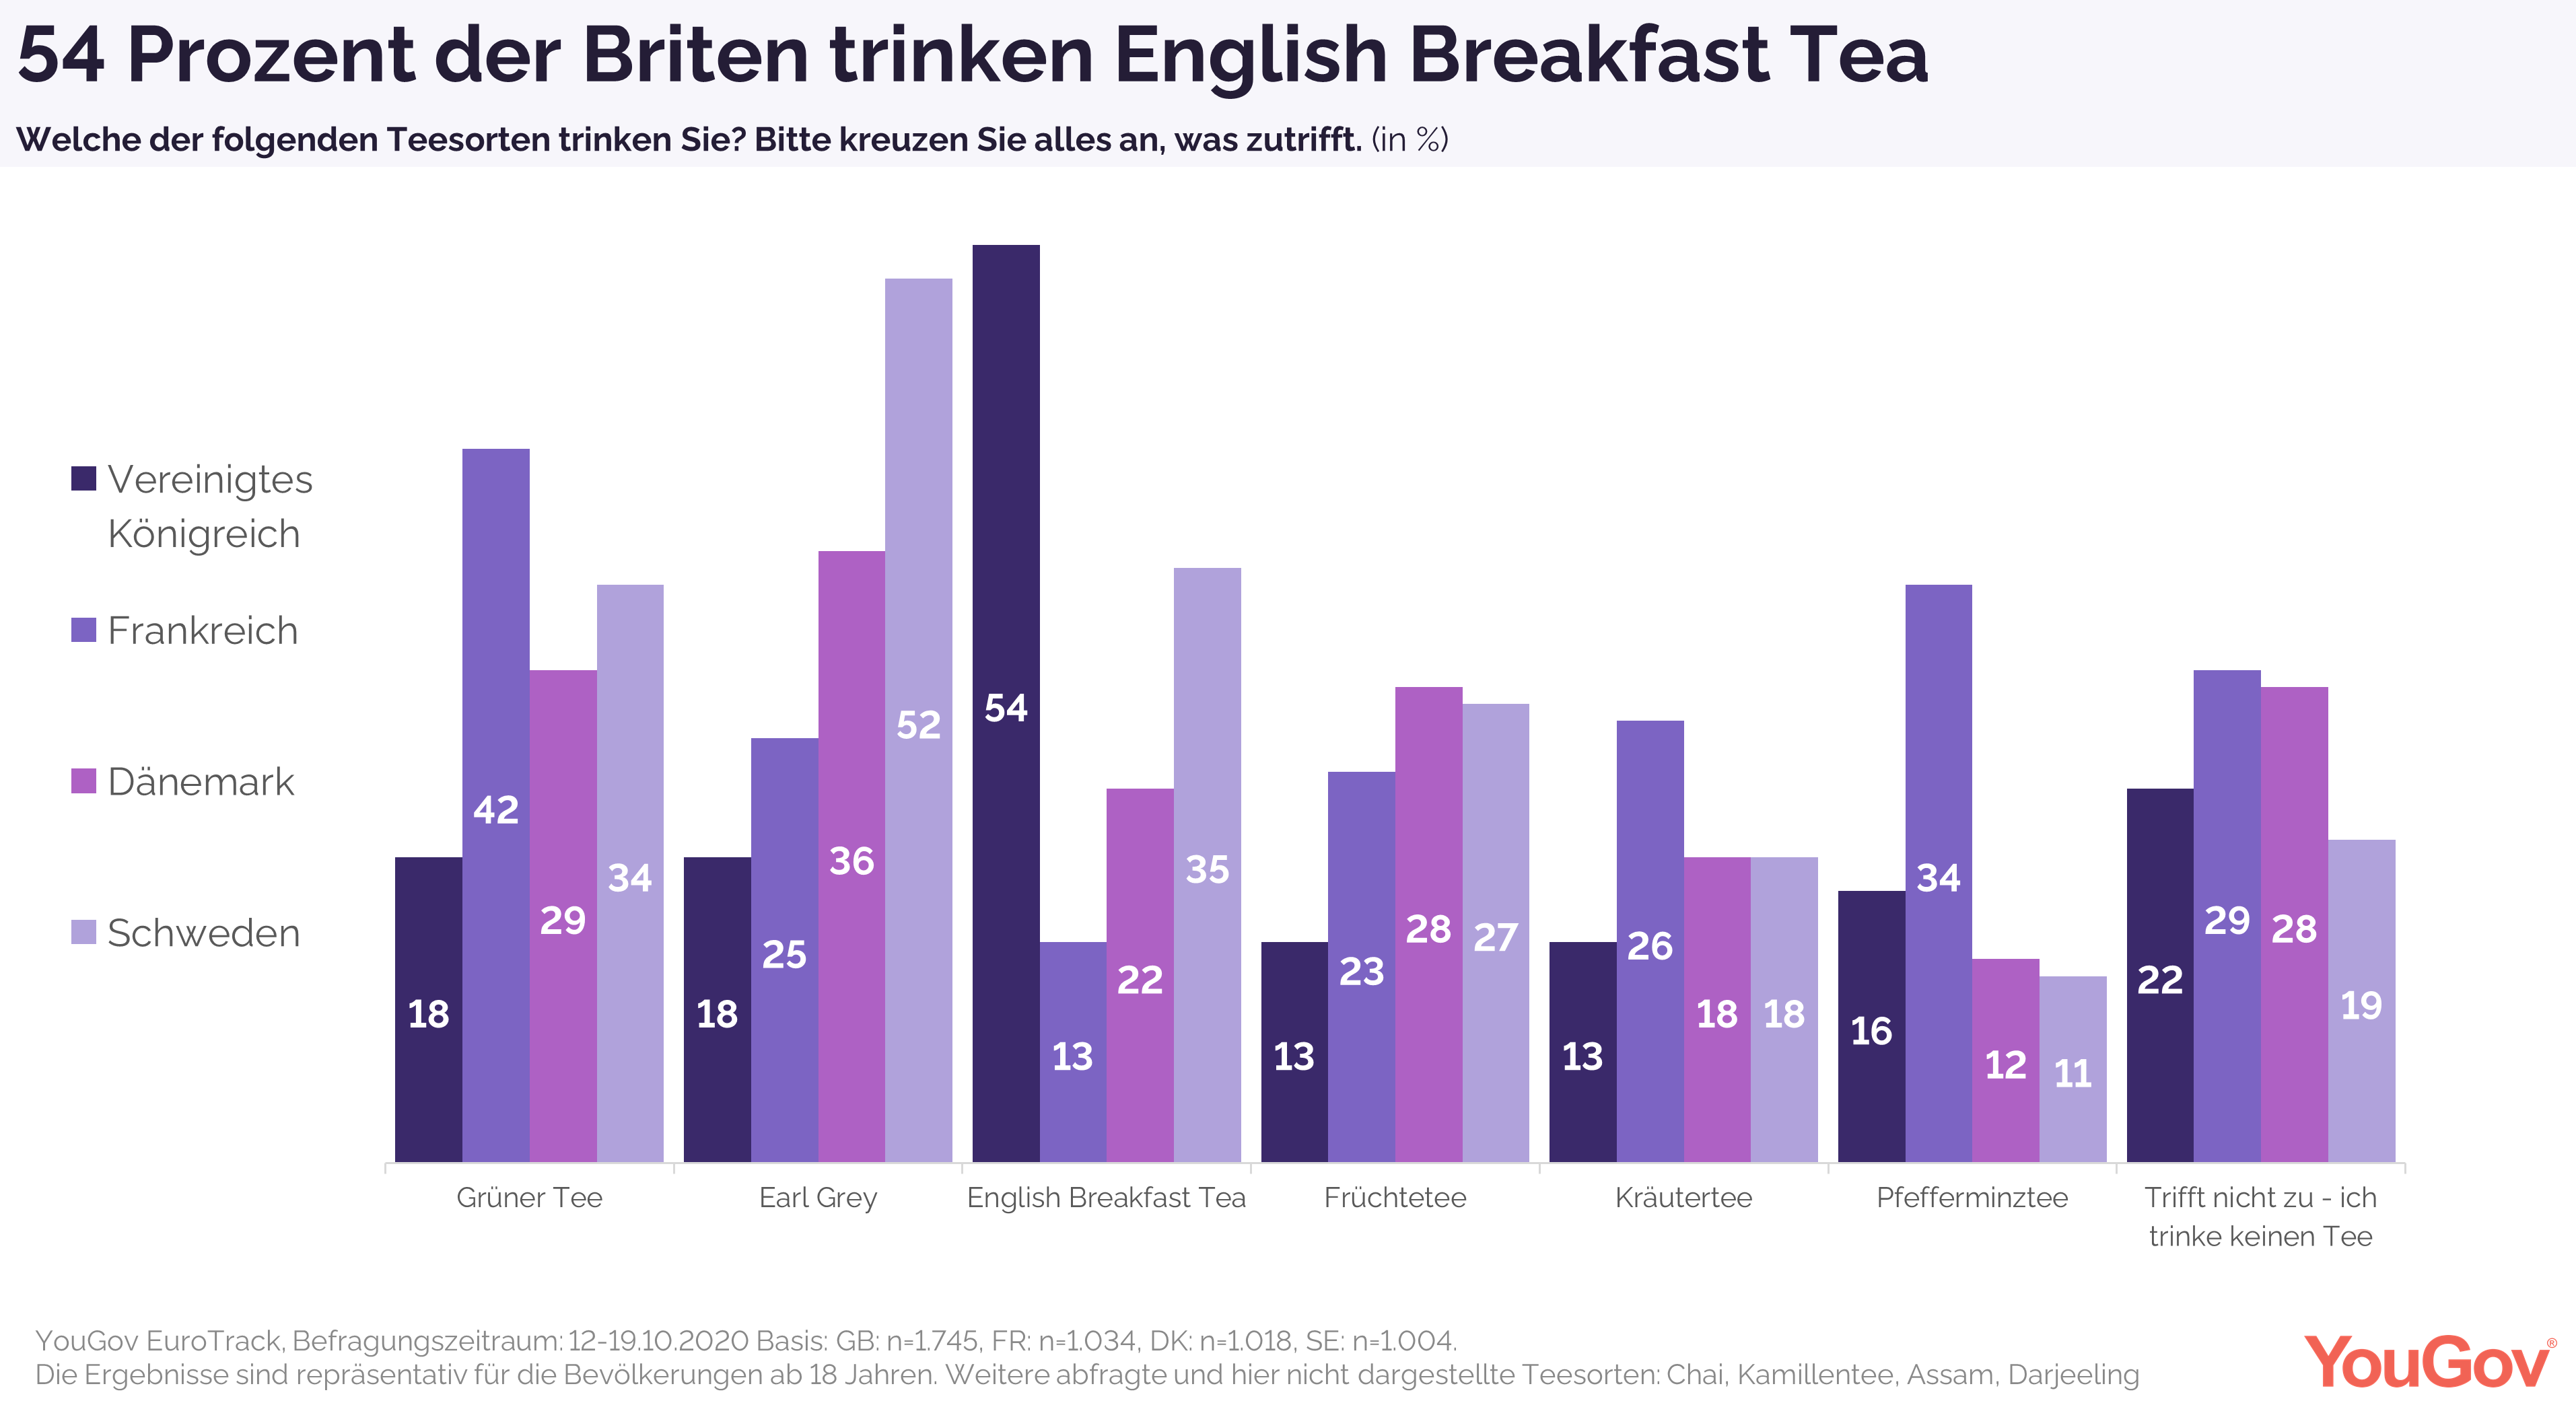 54% der Briten trinken English Breakfast Tea